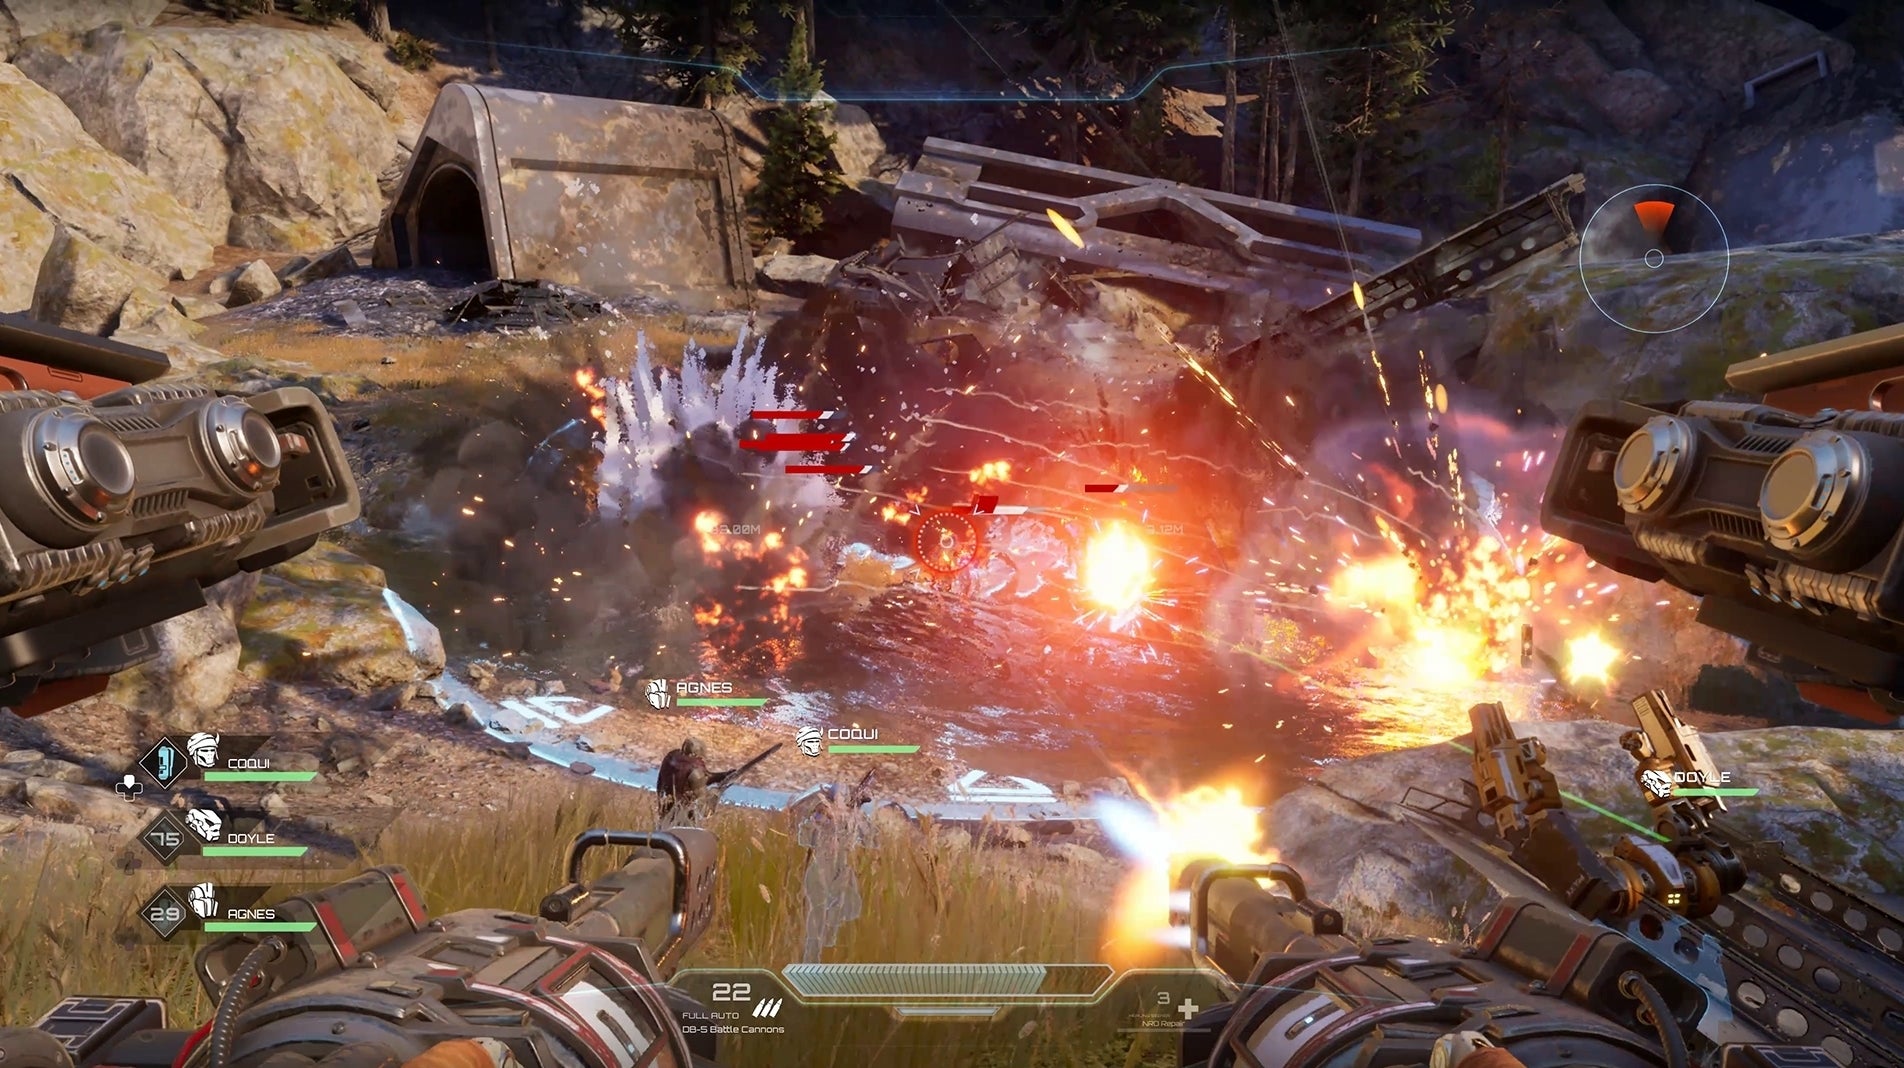 Immagine di Disintegration in azione in un nuovo video gameplay che mostra una missione della campagna single player